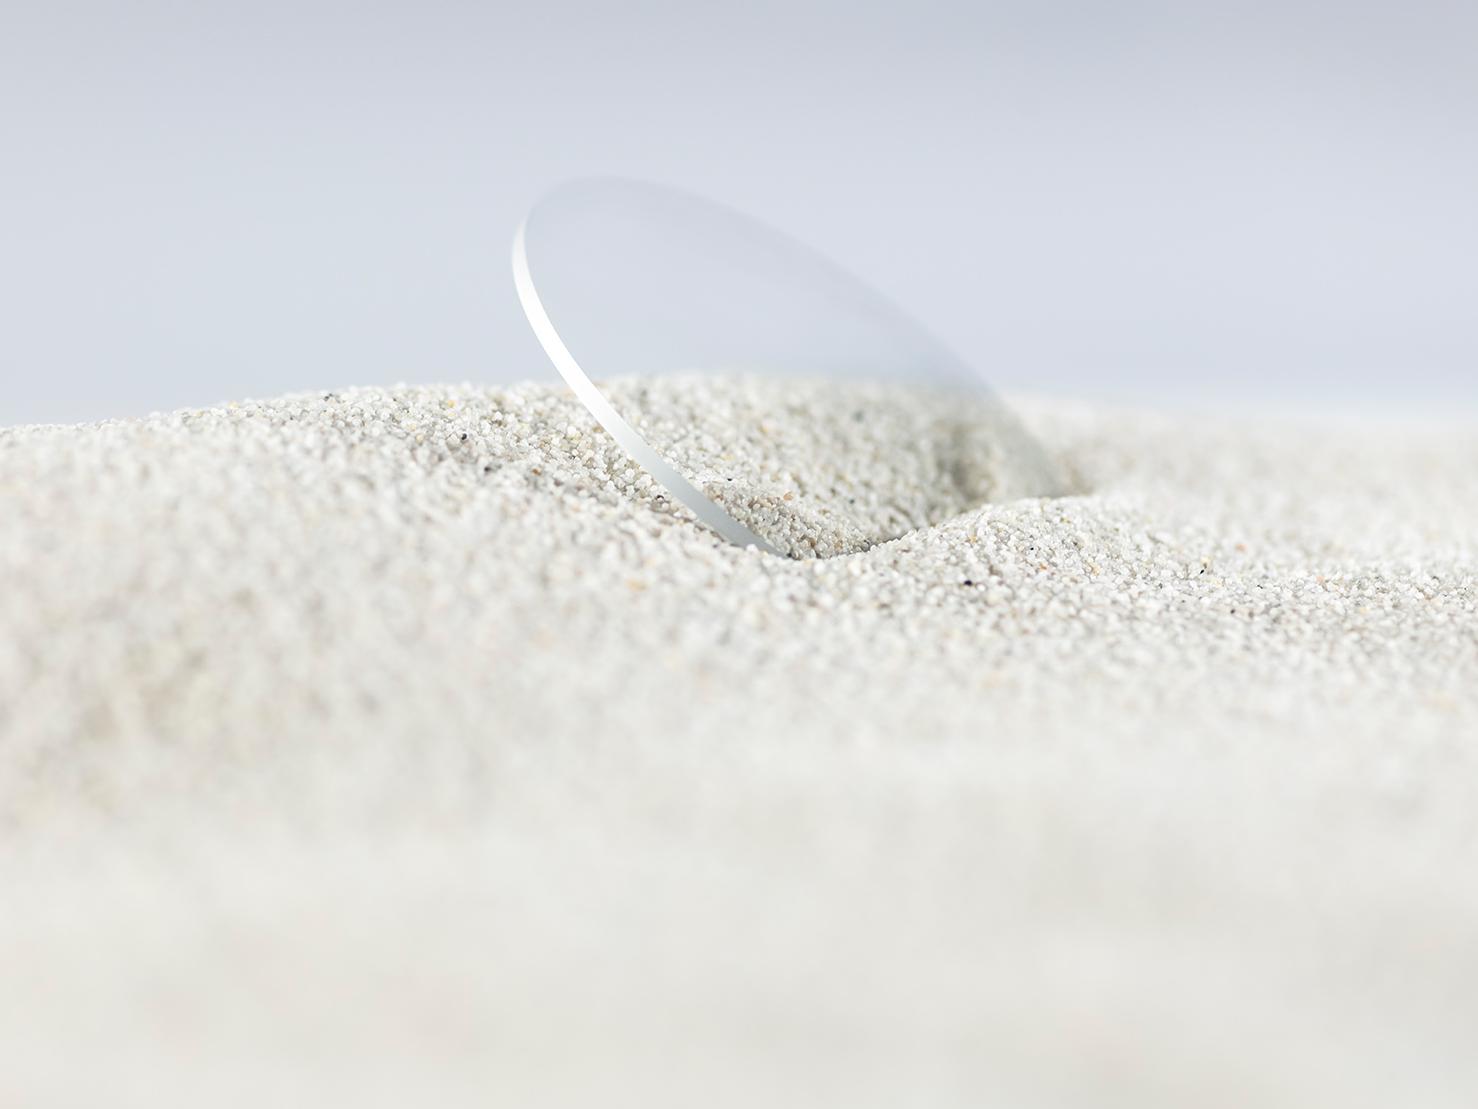 粗糙的沙子覆蓋具有耐用鍍膜的蔡司鏡片，但鏡片仍然沒有划痕。